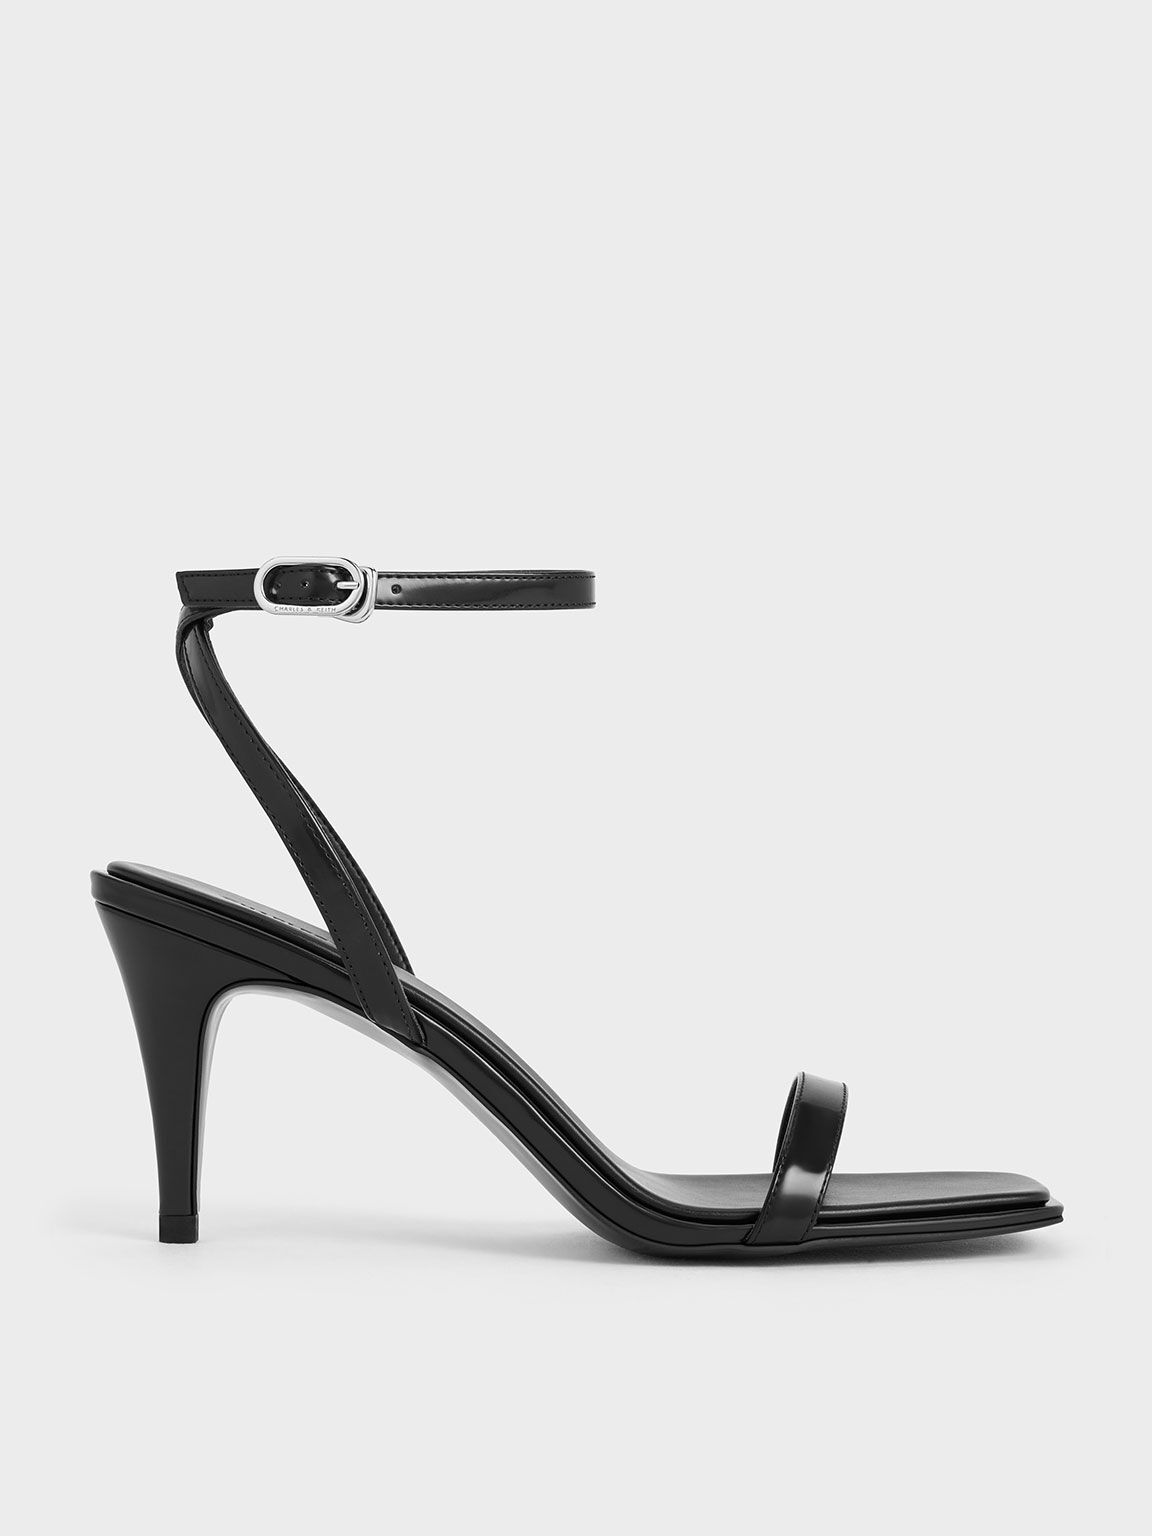 Sandal Heeled Ankle-Strap, Black Box, hi-res